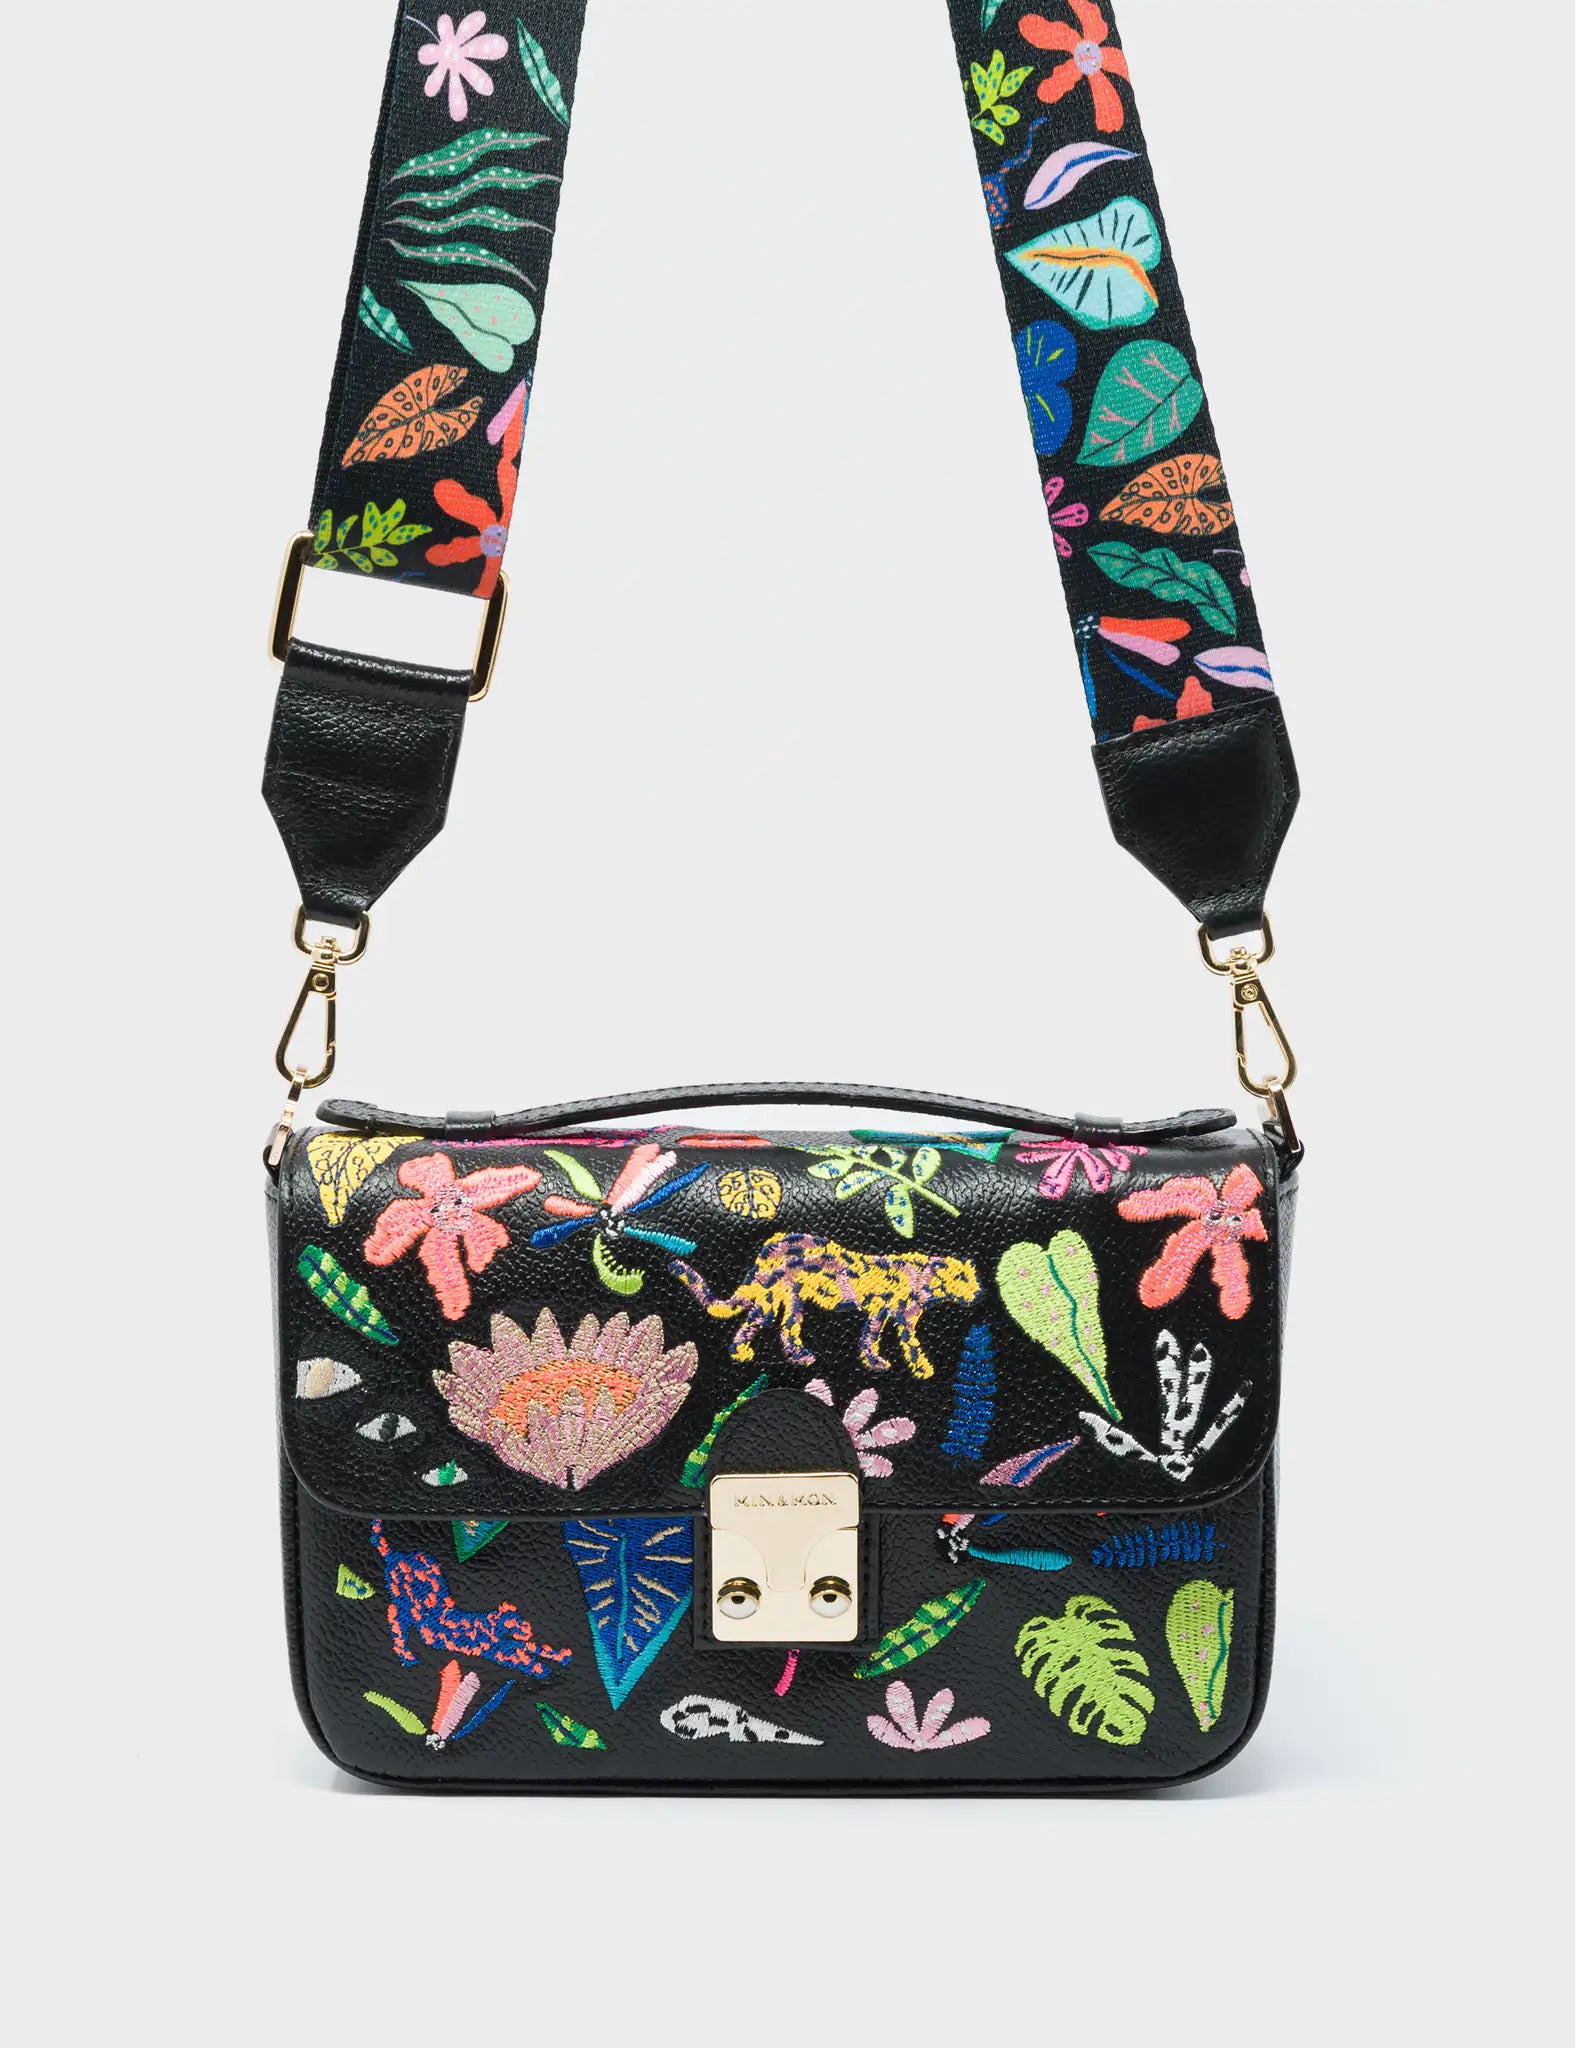 Amantis Cameo Black Leather Crossbody Mini Handbag - El Trópico Embroidery Design - Strap